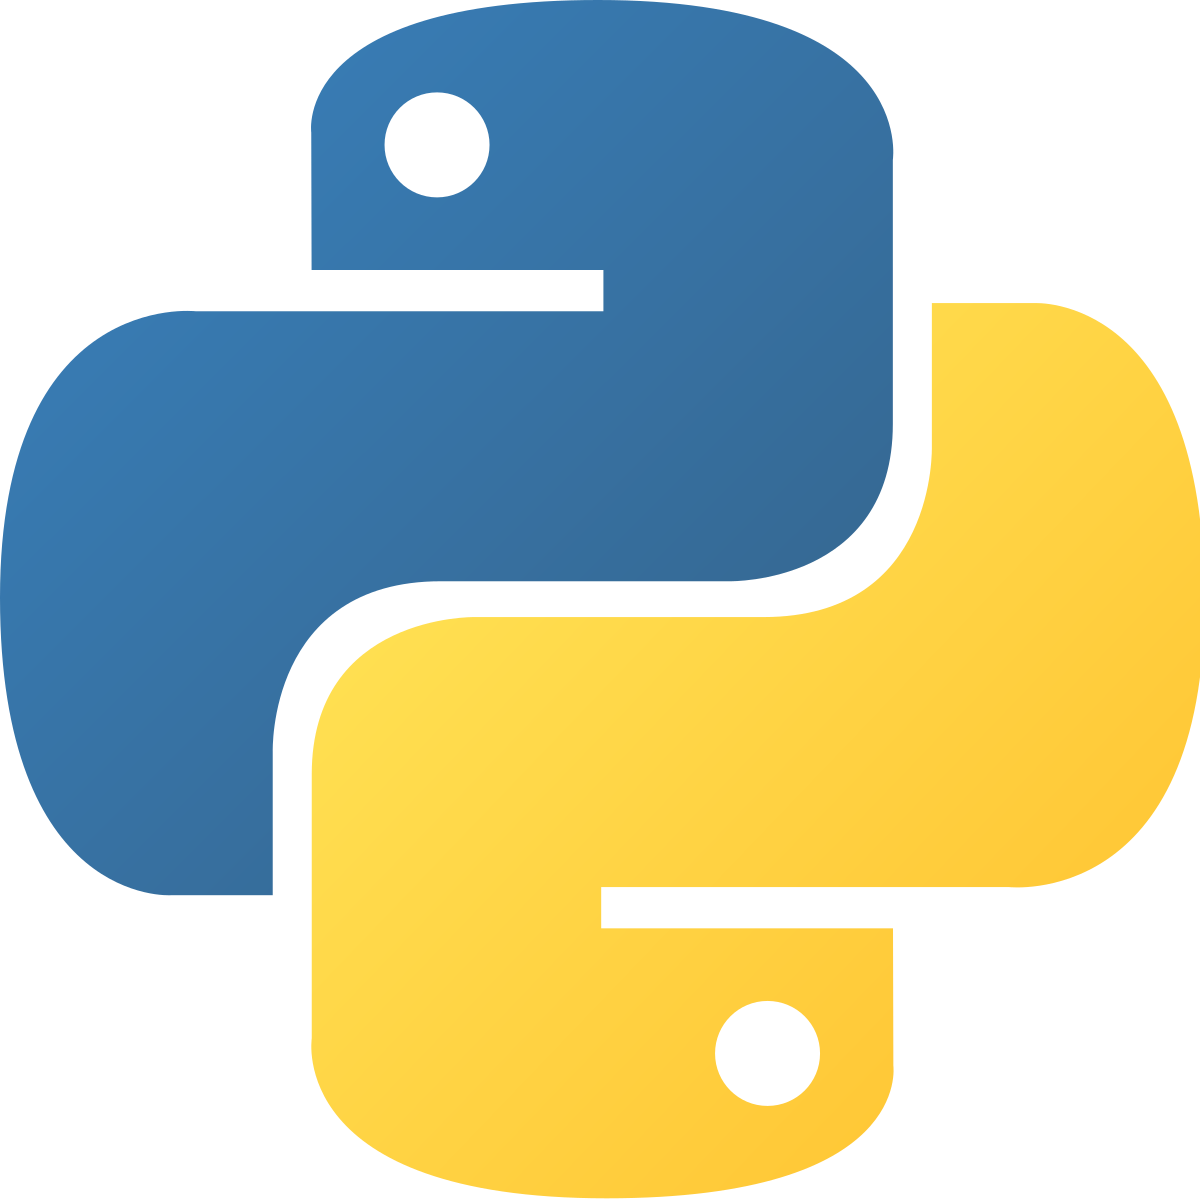 ADU011101 Basic Introduction to Python